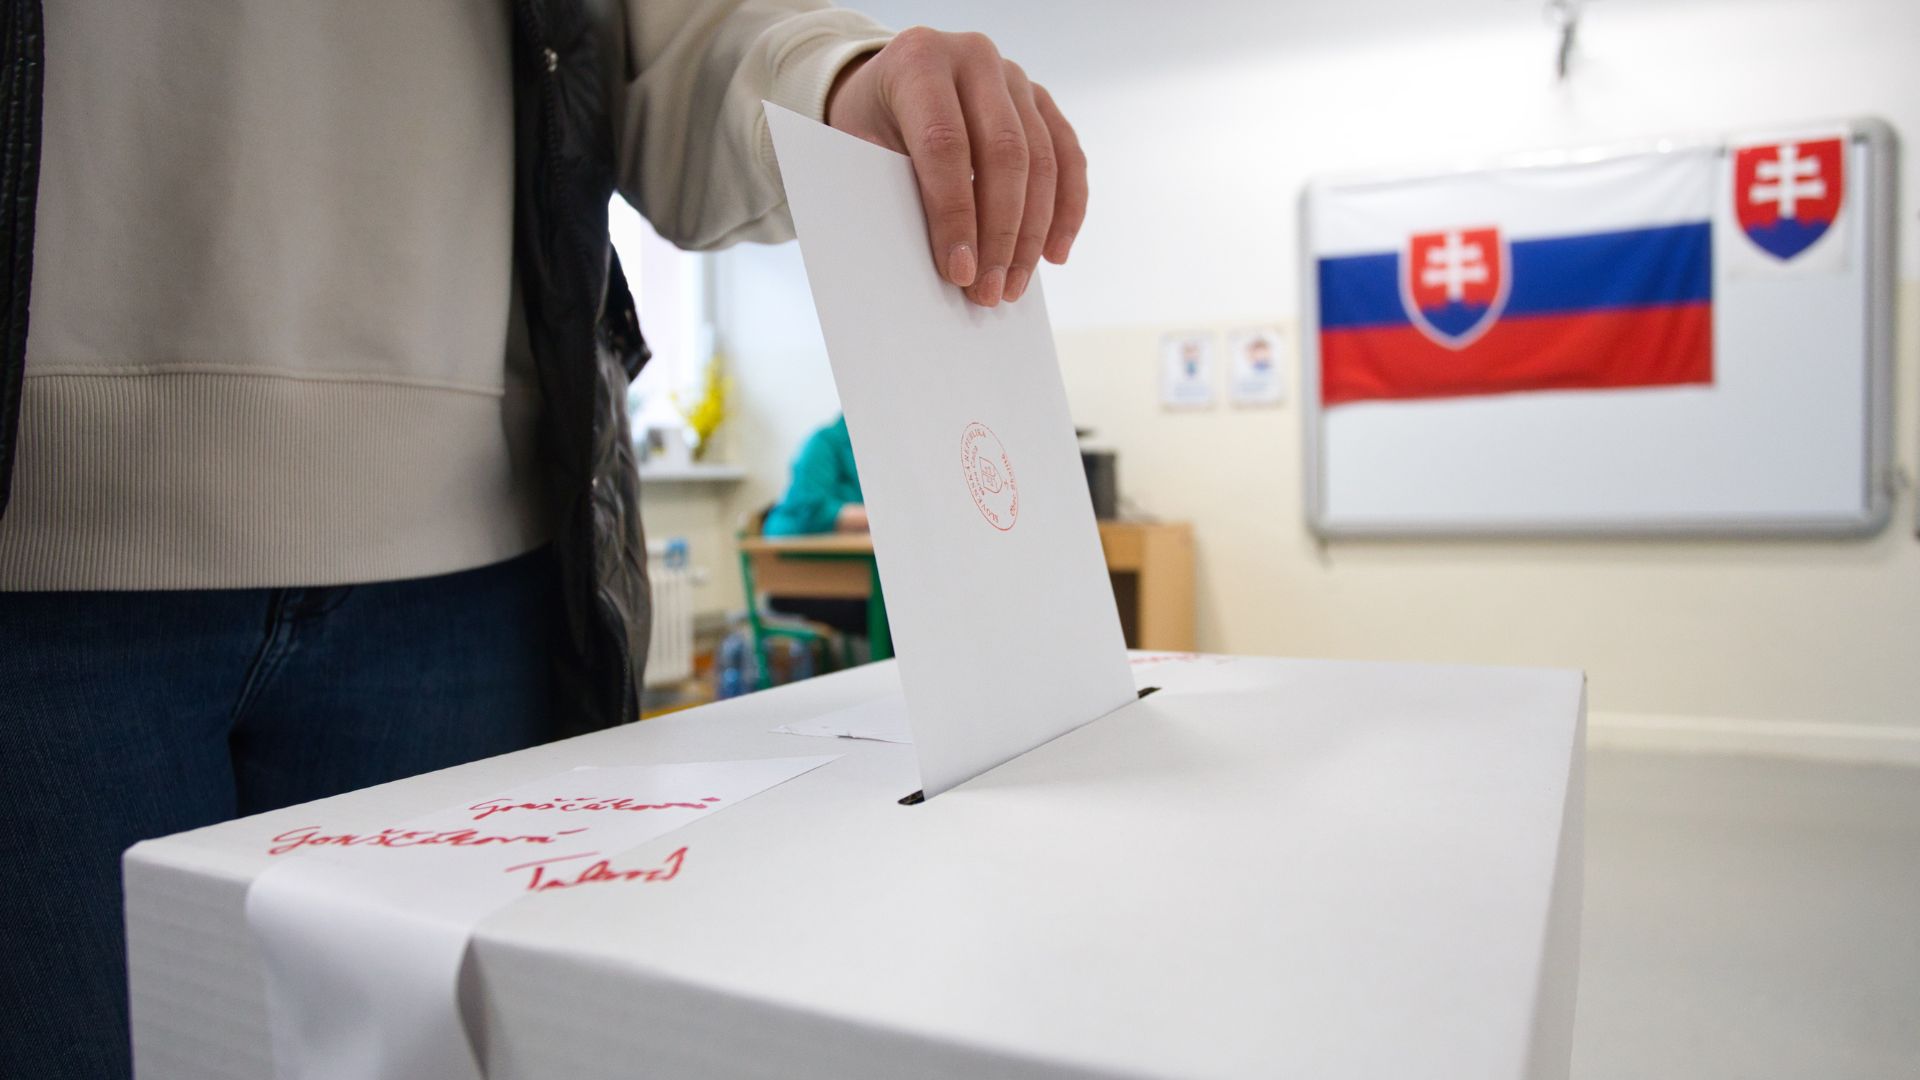 Muž vhadzuje do urny hlasovací lístok.